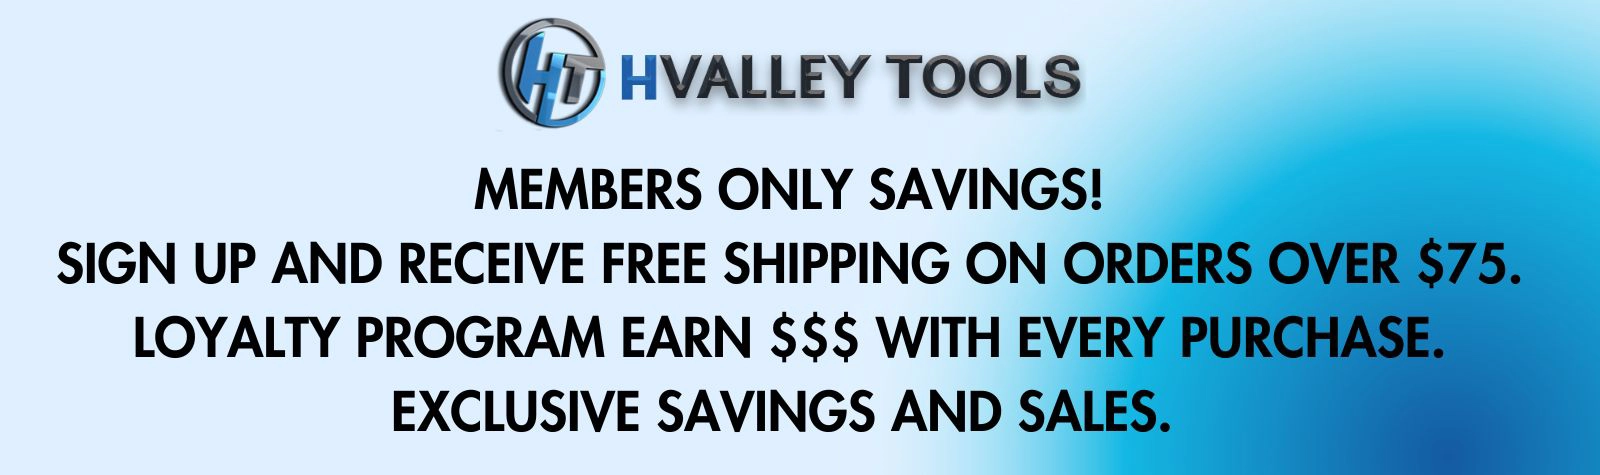 HValley Tools Member Savings